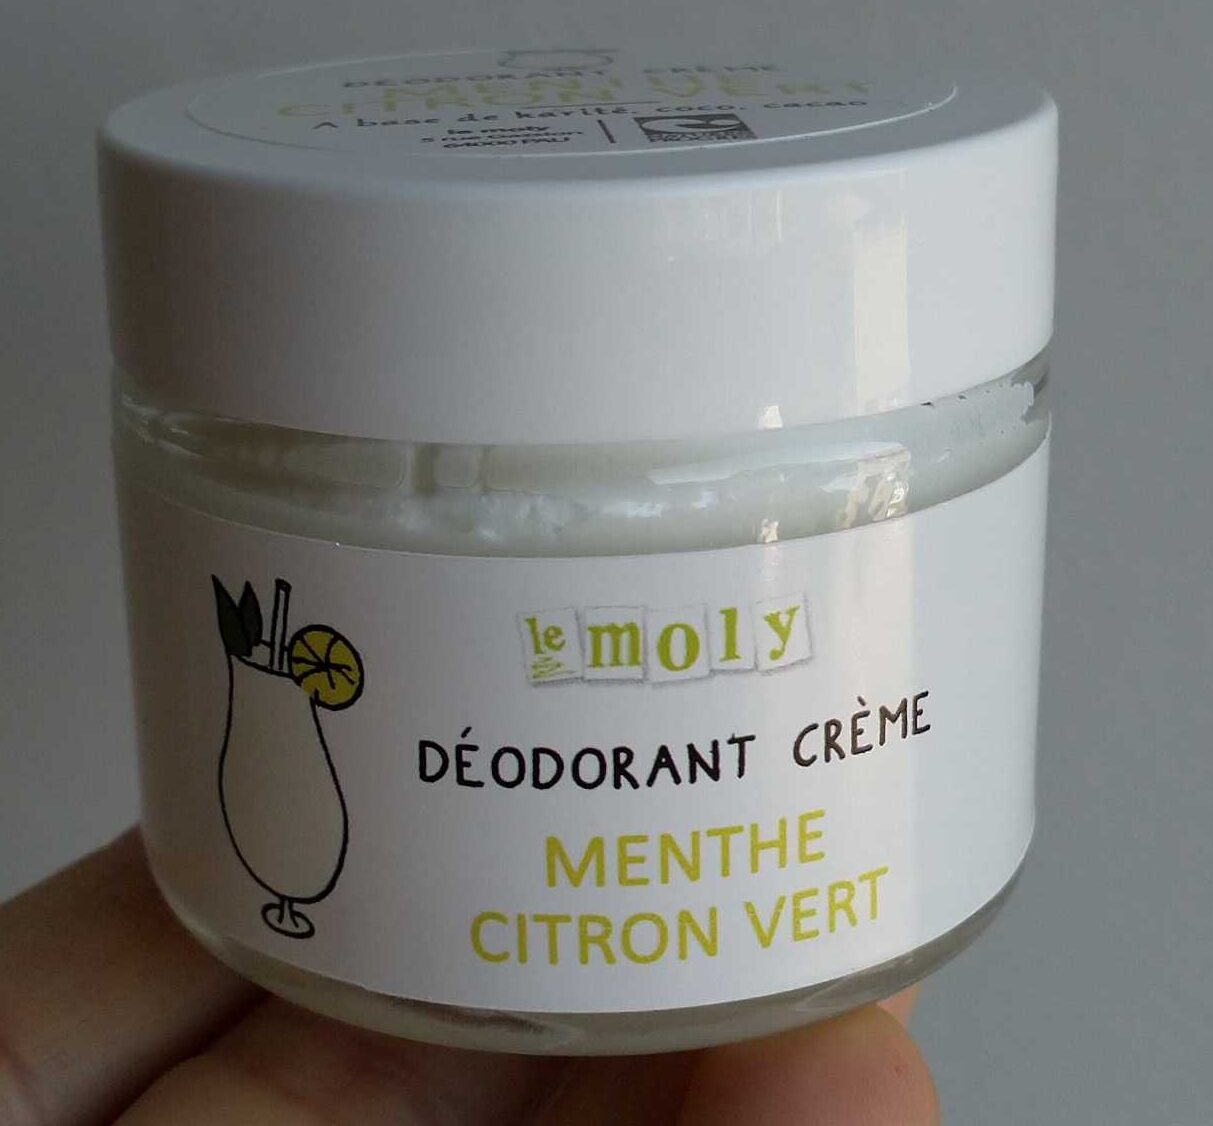 Déodorant crème menthe citron vert - Produto - fr